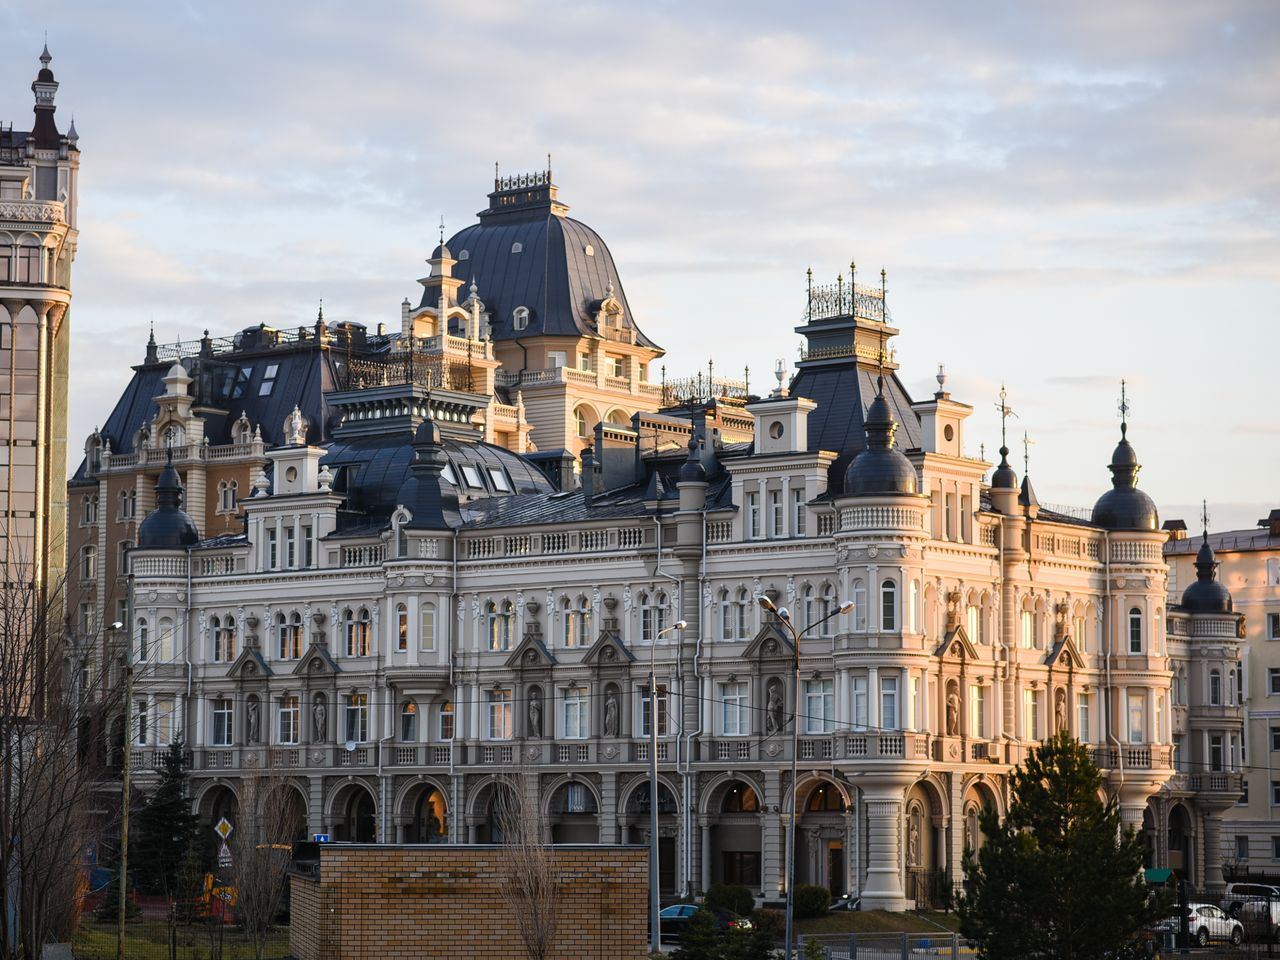 Обзорная экскурсия по Казани + Кремль  | Цена 1500₽, отзывы, описание экскурсии